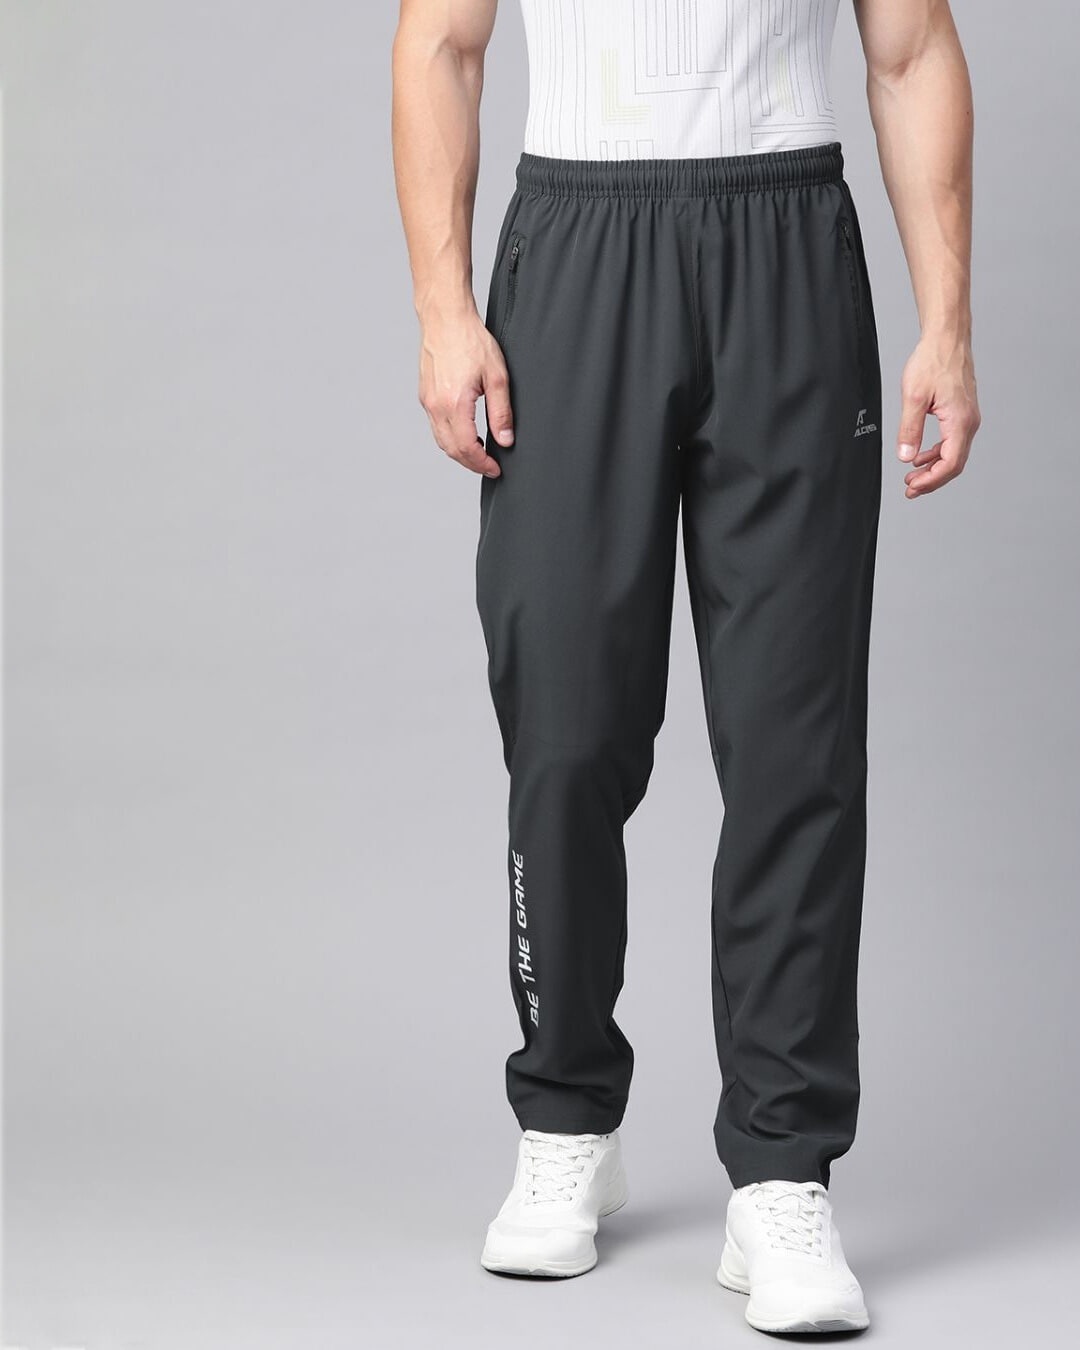 Shop Men Charcoal Grey Solid Track Pants